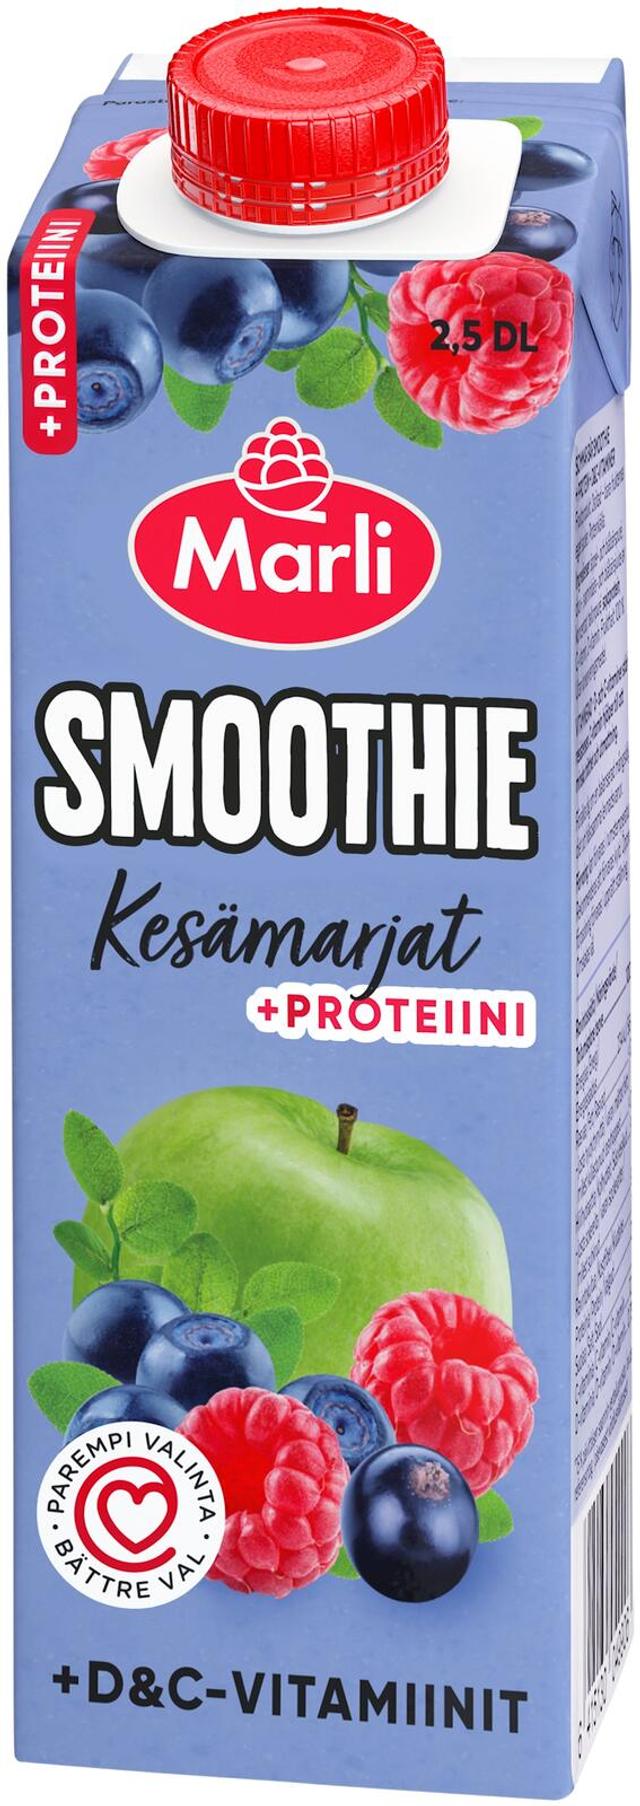 Marli Kesämarjat smoothie + D&C -vitamiinit ja proteiini 0,25L